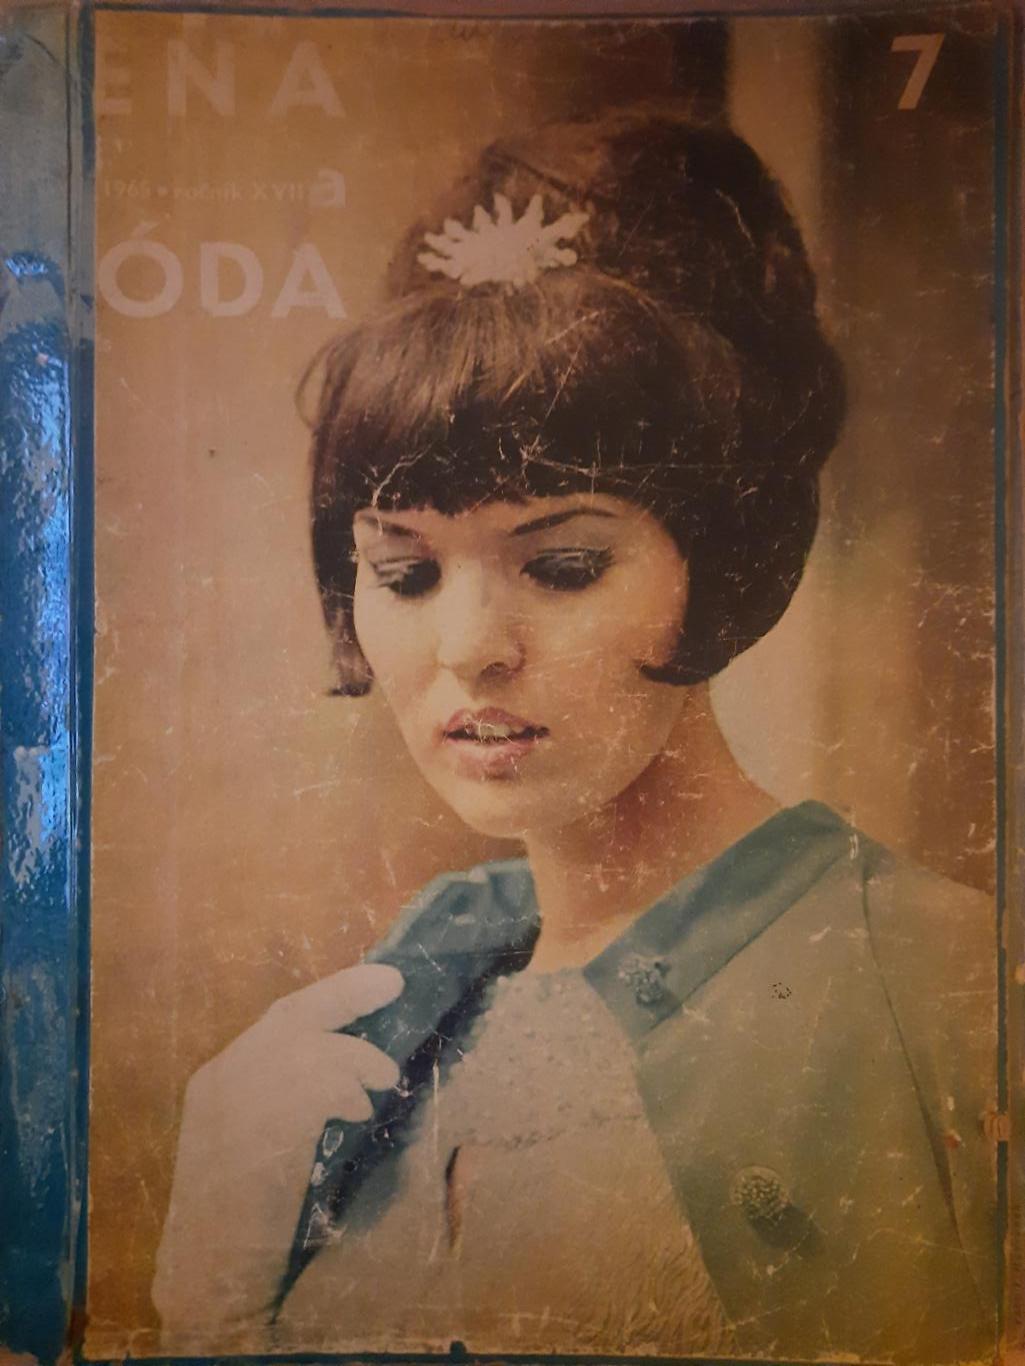 Журналы подшивка, Zena a Moda /Чехословакия 1965